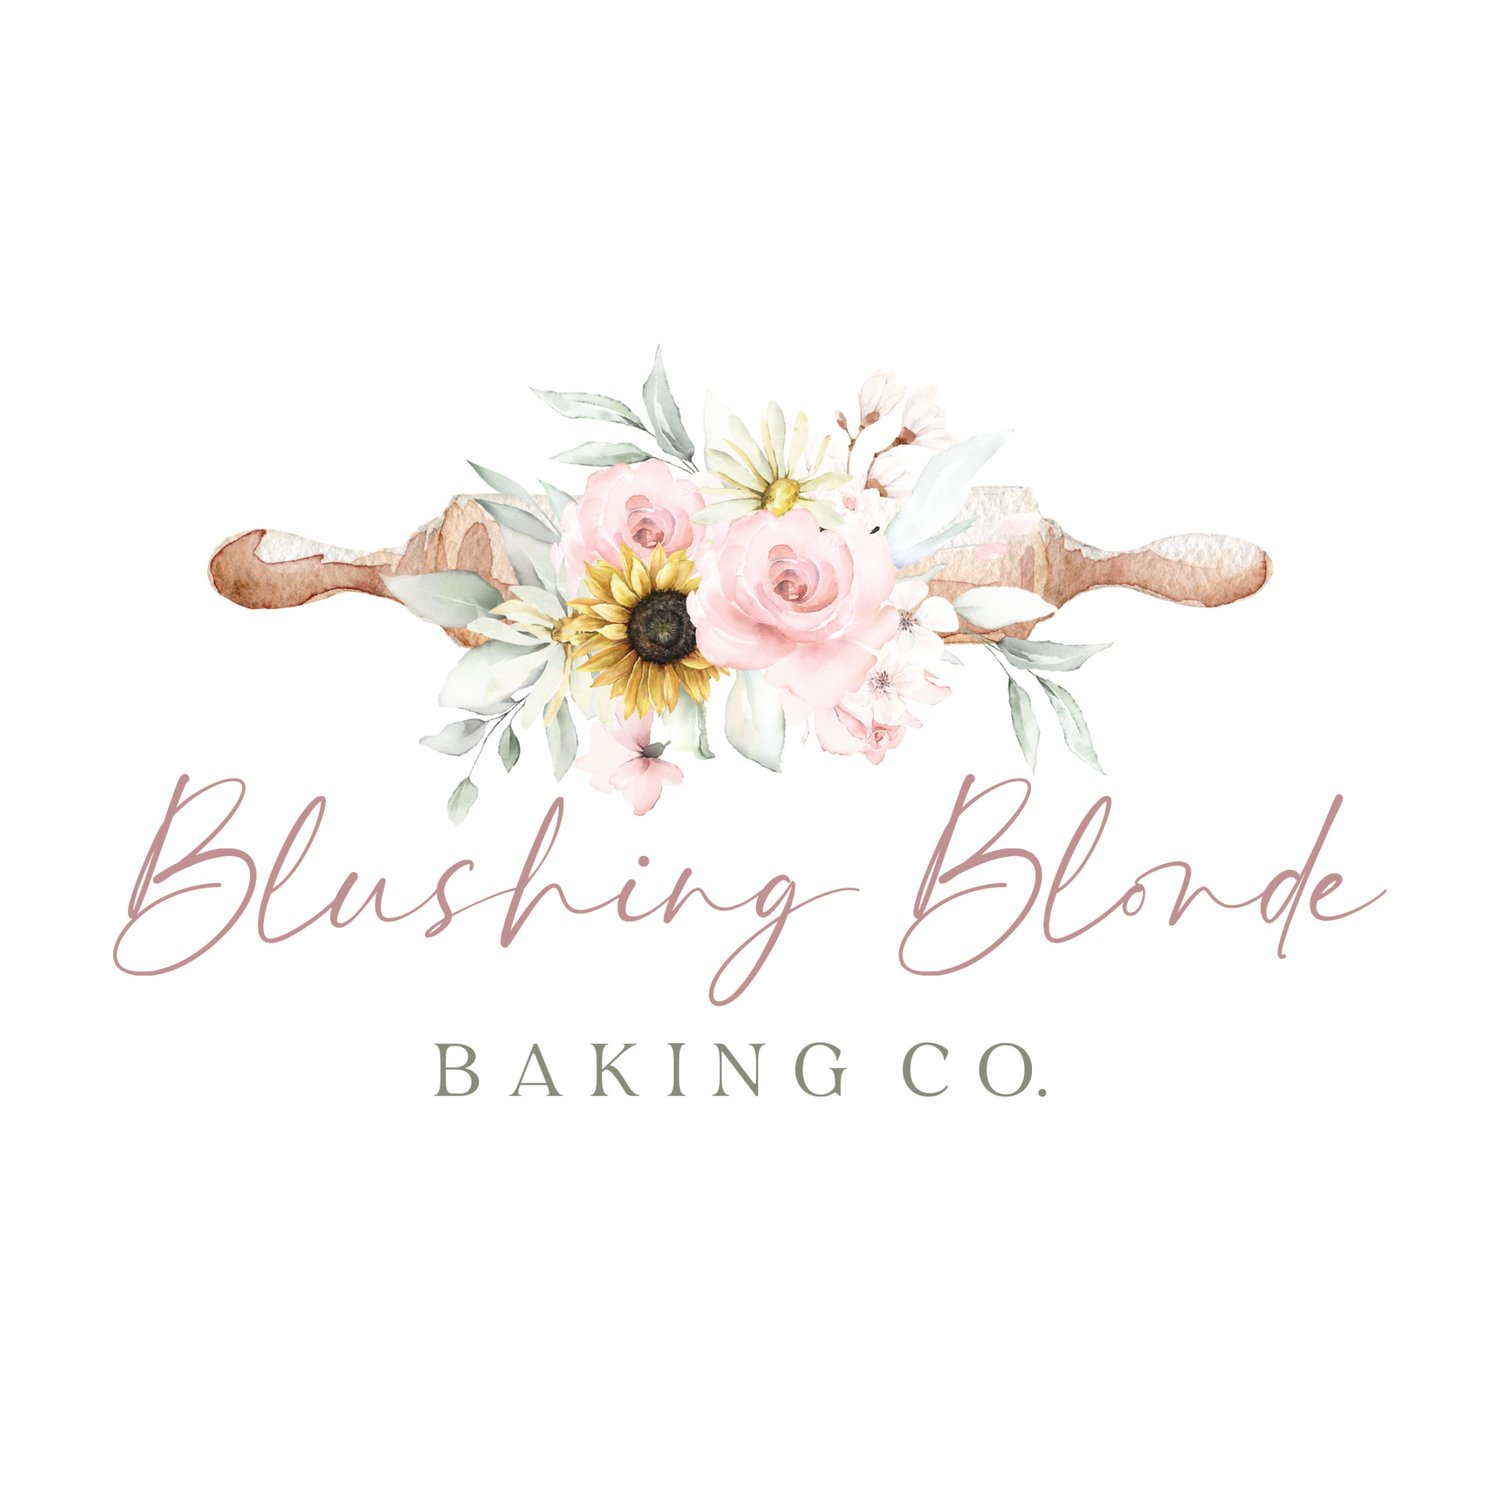 Blushing Blonde Baking Co.